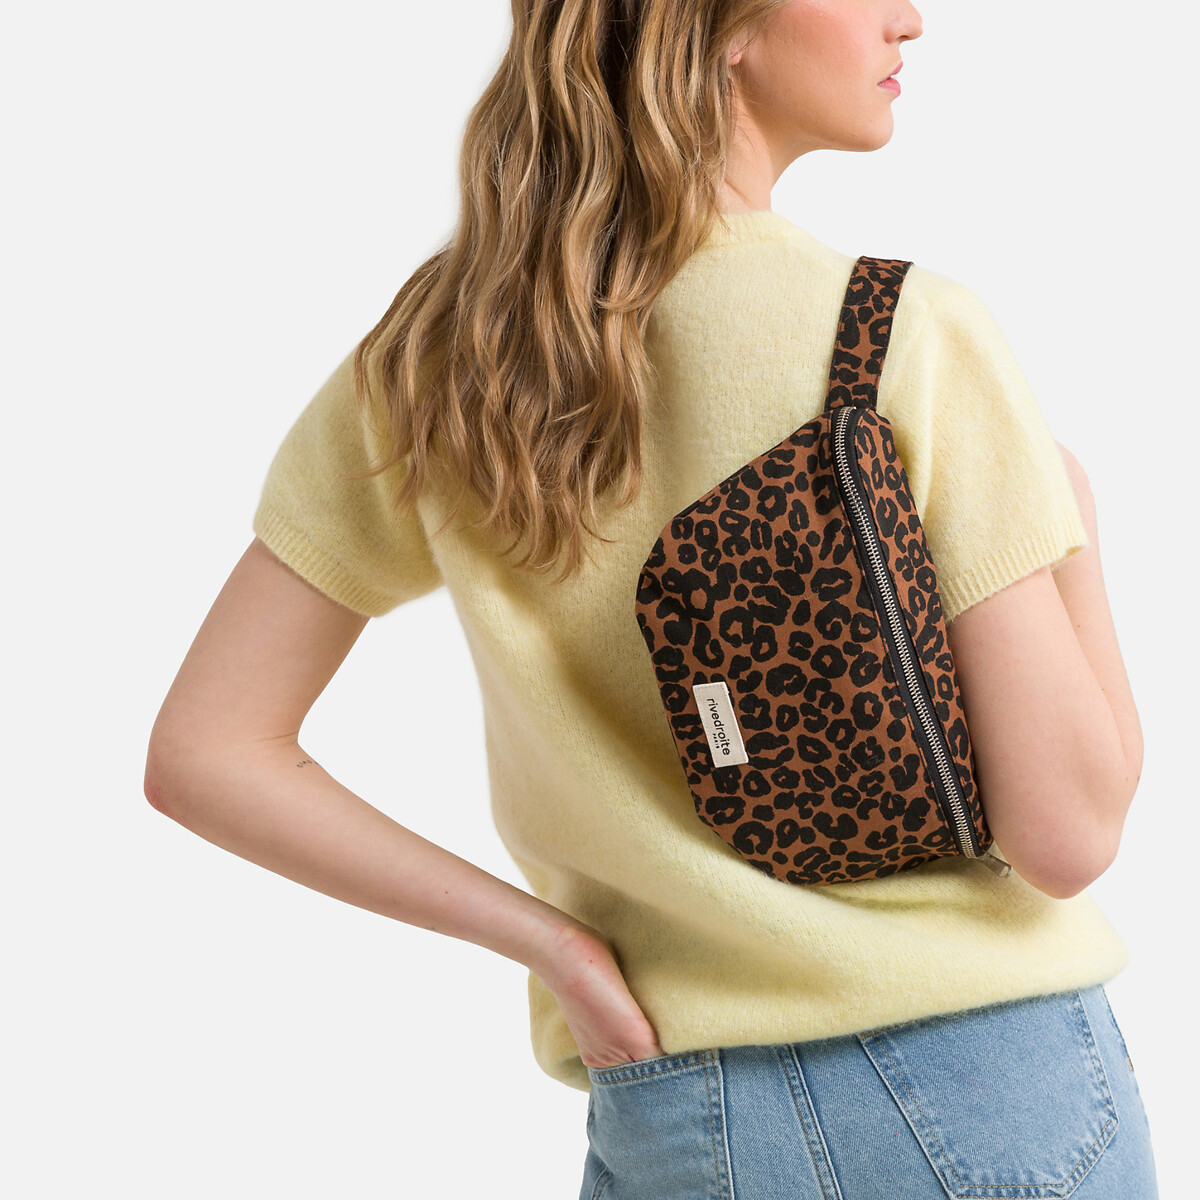 Custine Cotton Bum Bag in Leopard Print